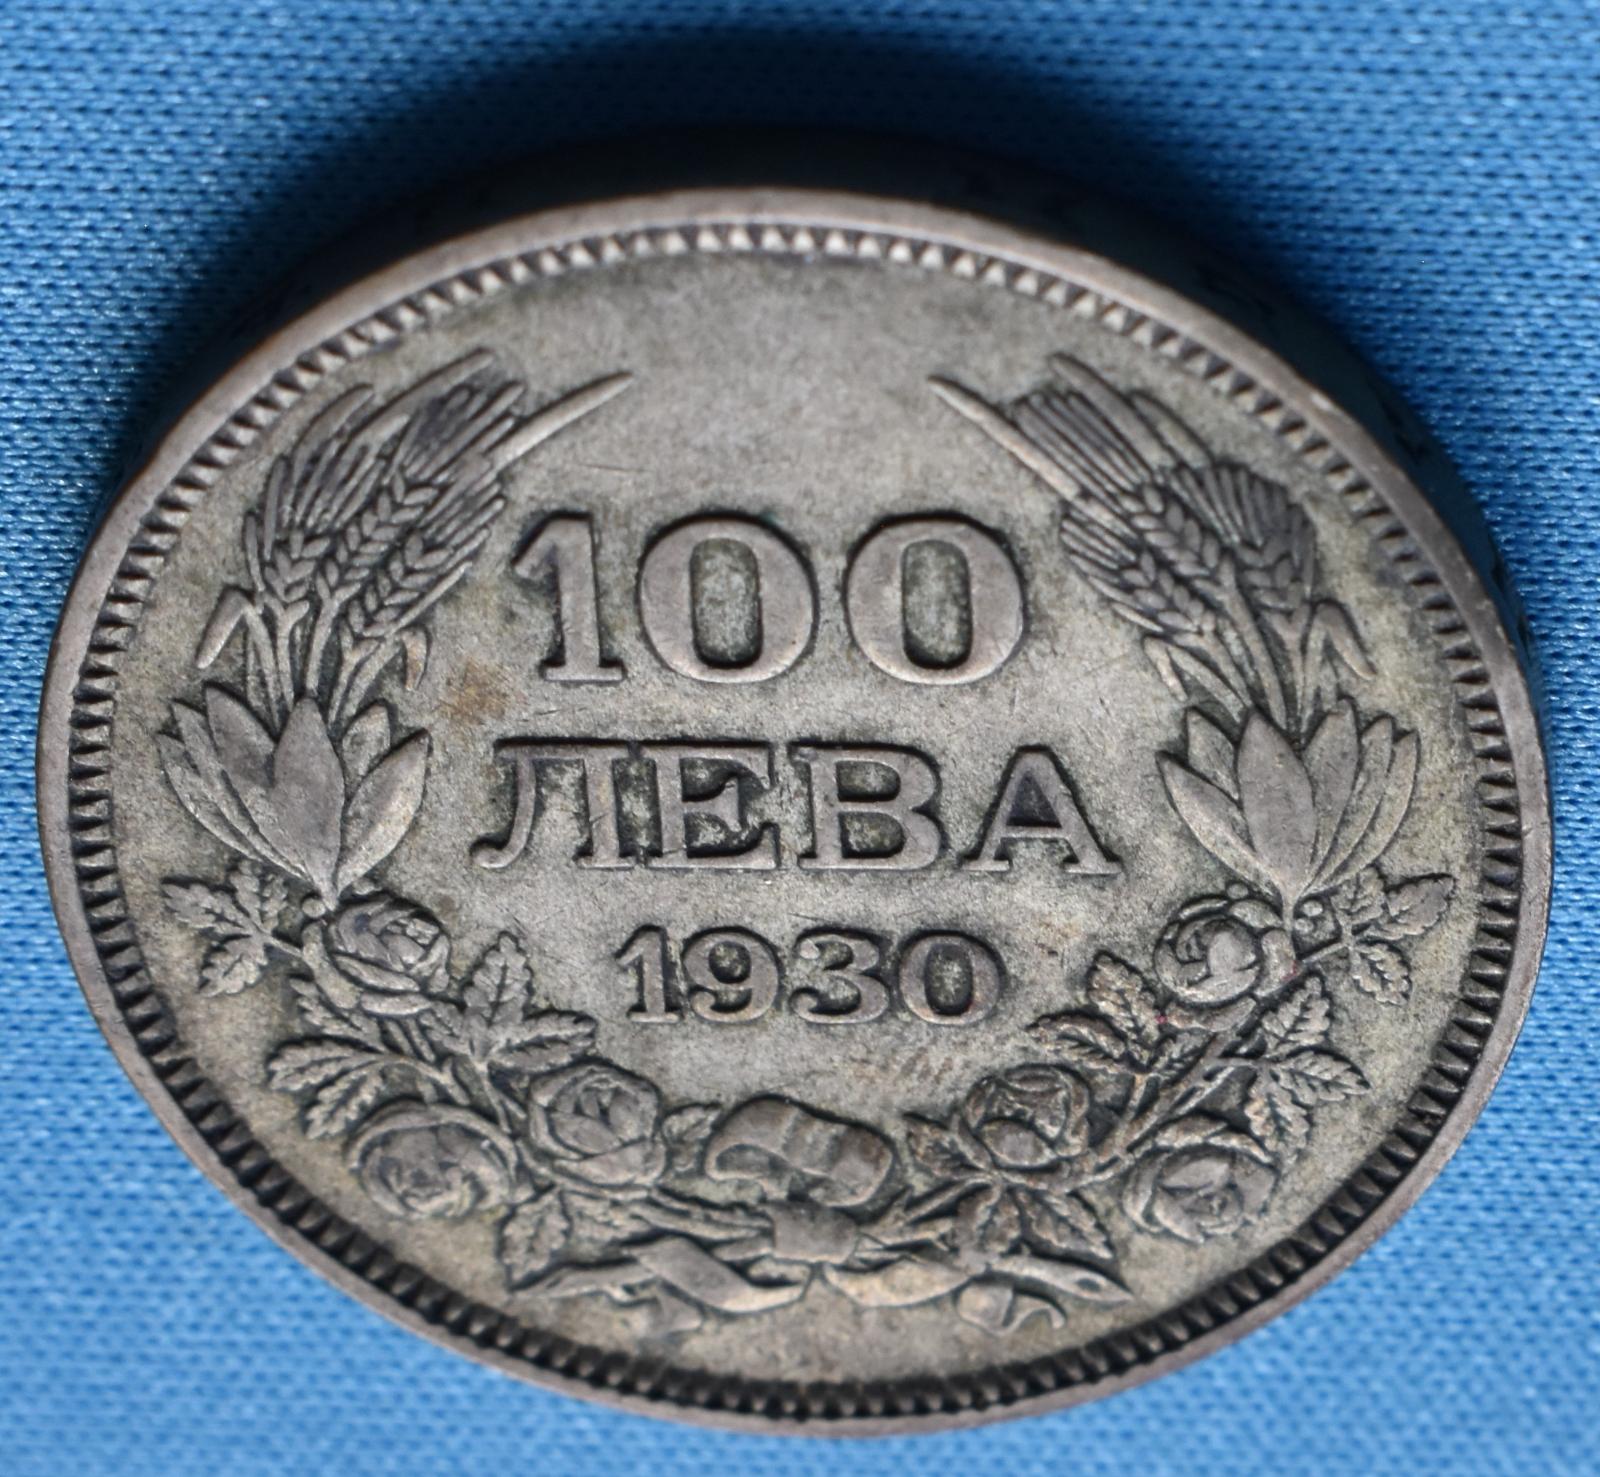 100 ľava 1930 - Numizmatika